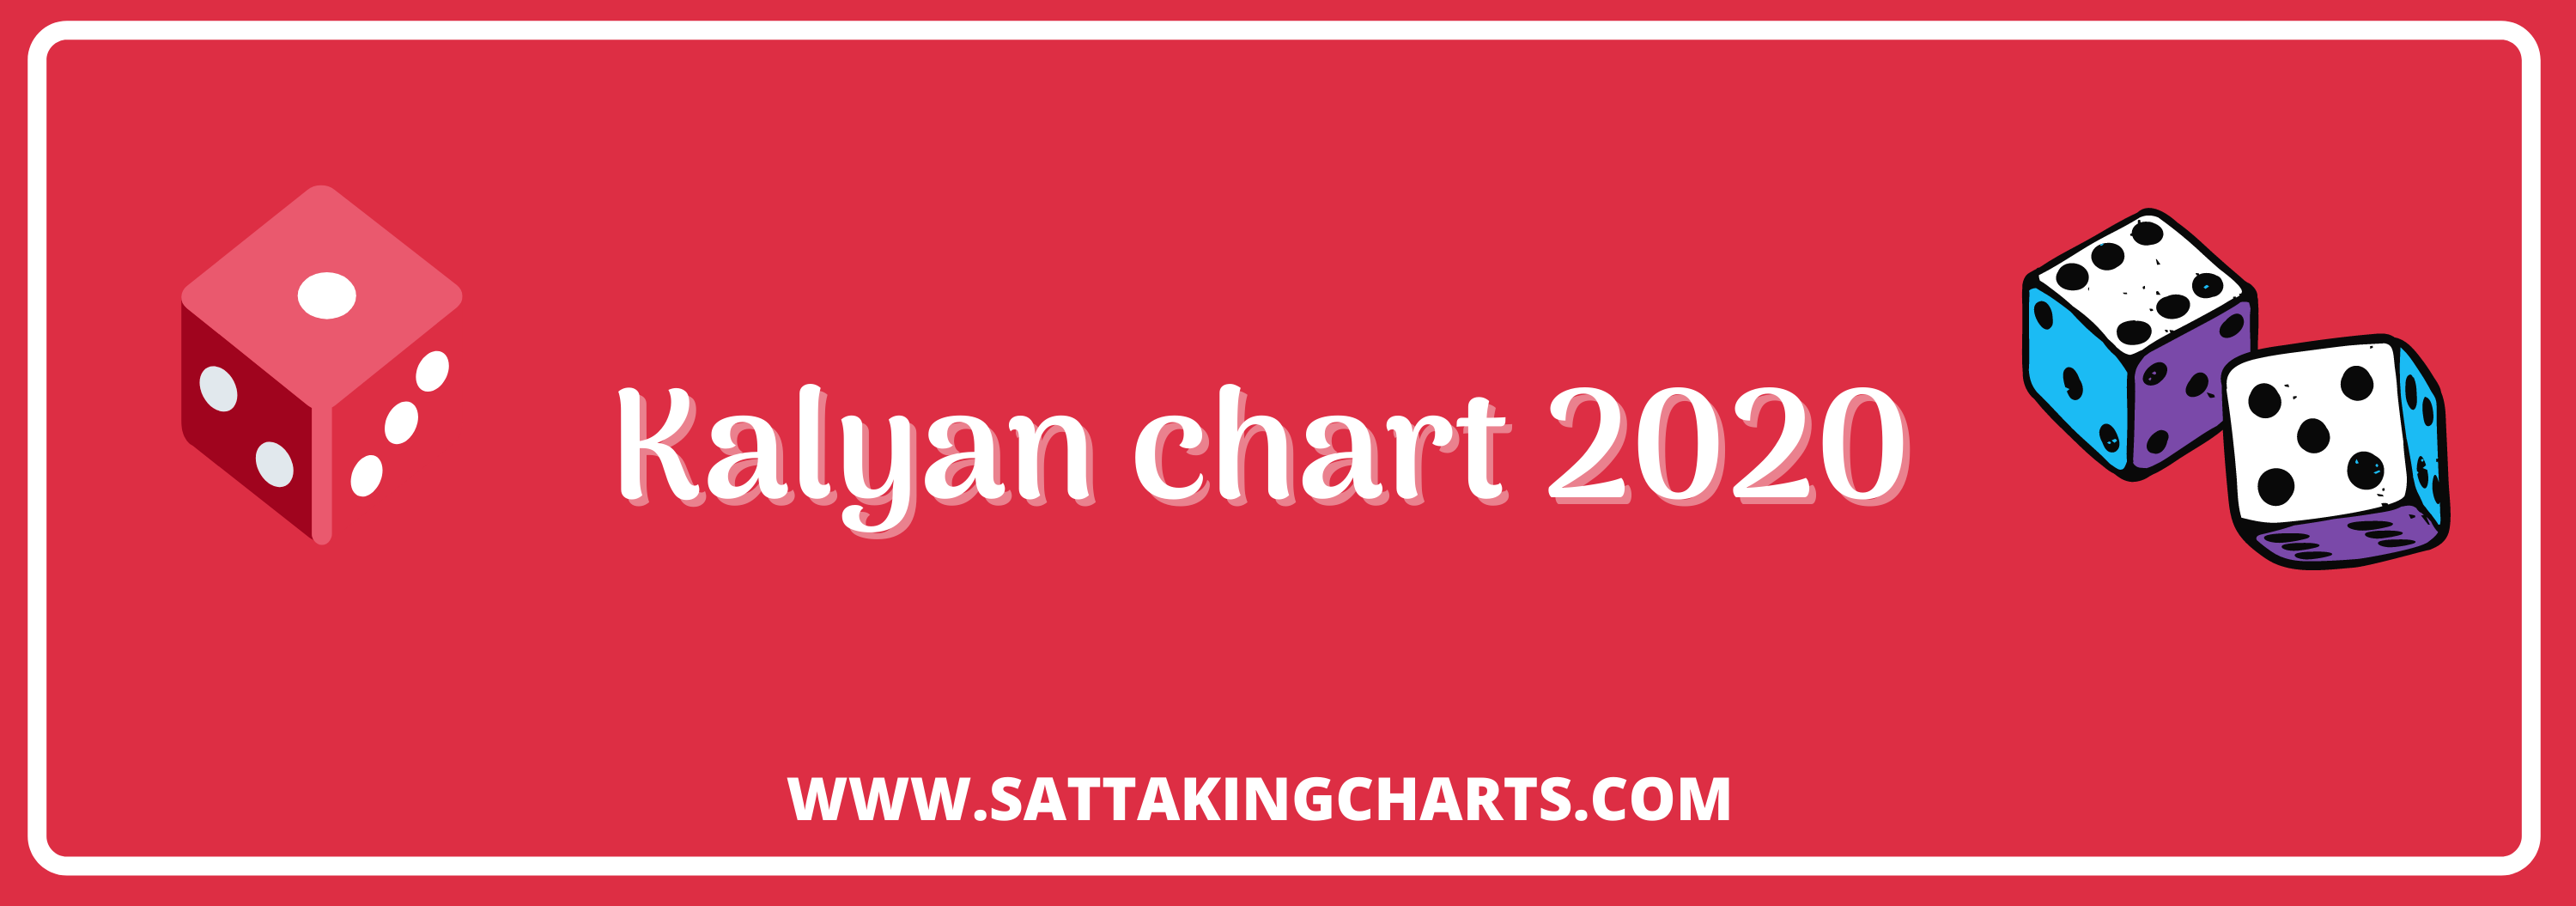 kalyan chart 2020